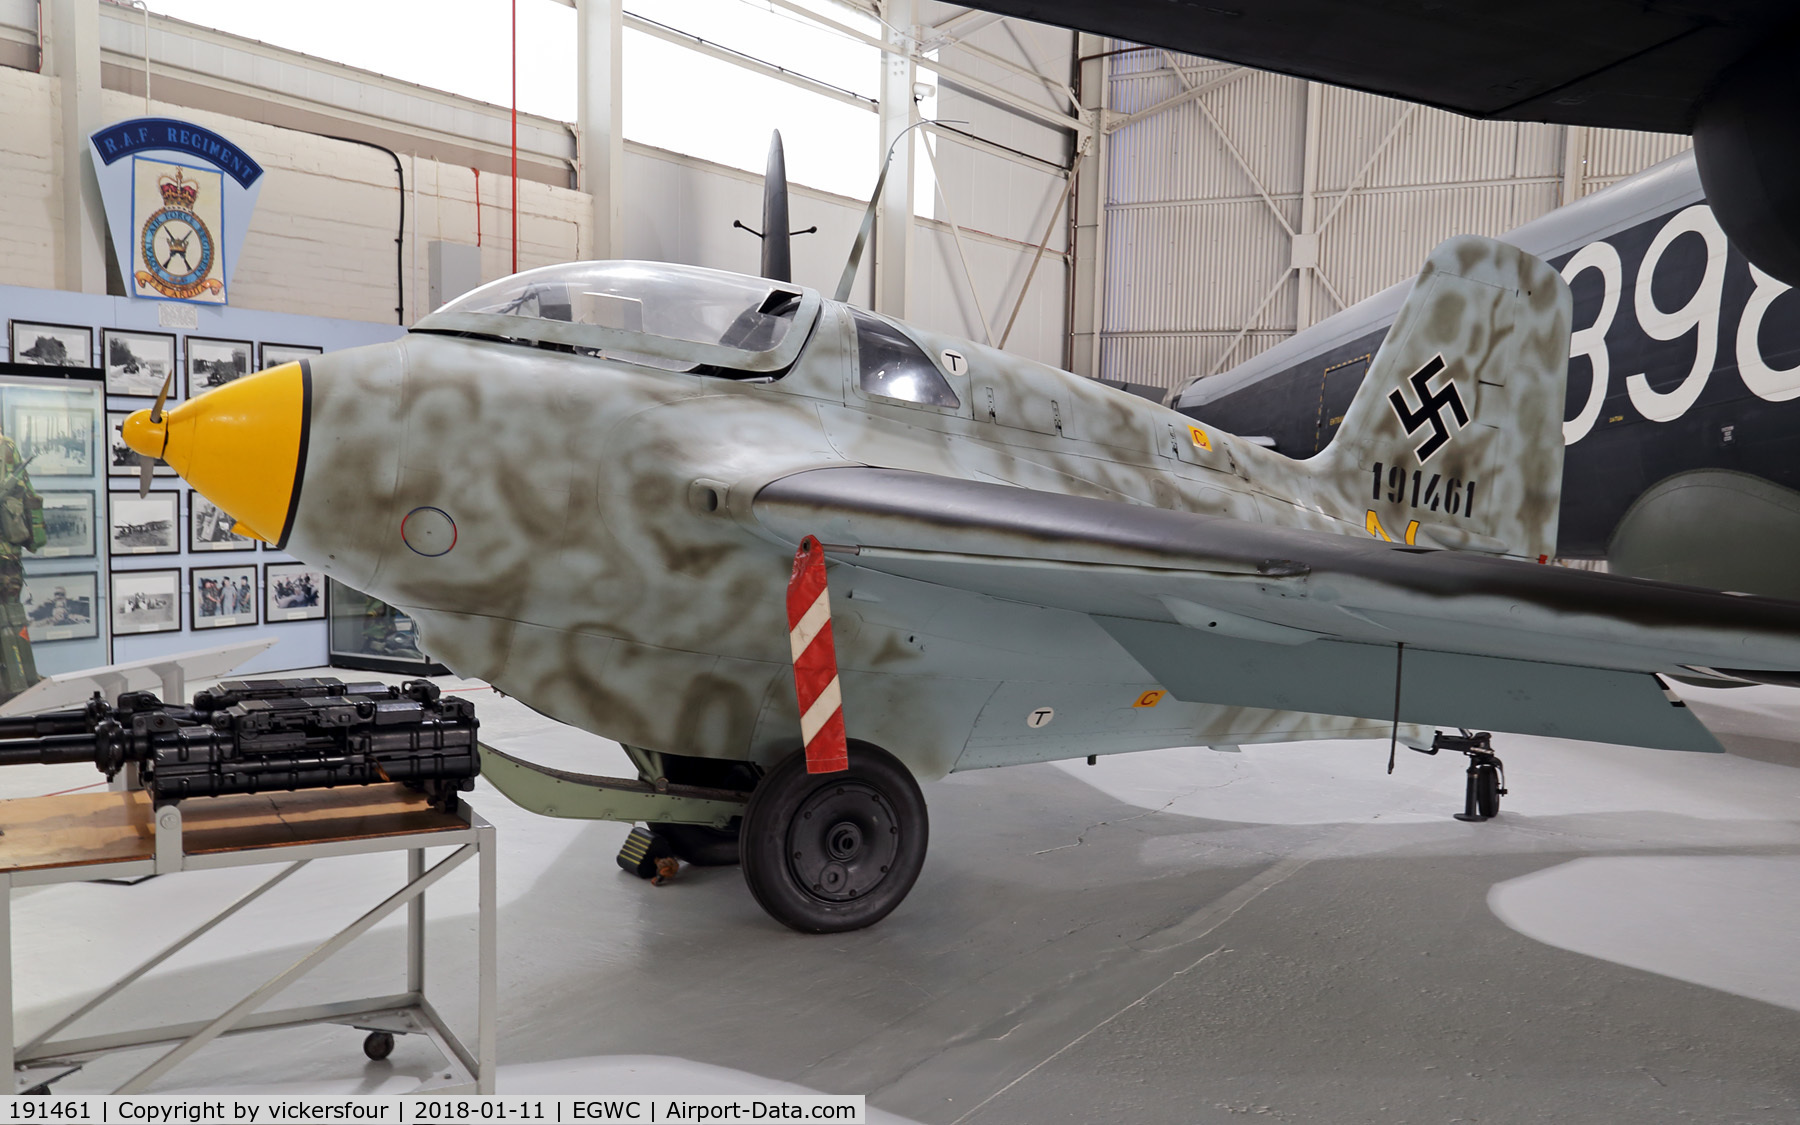 191461, 1945 Messerschmitt Me-163B-1a Komet C/N 191614, RAF Museum Cosford